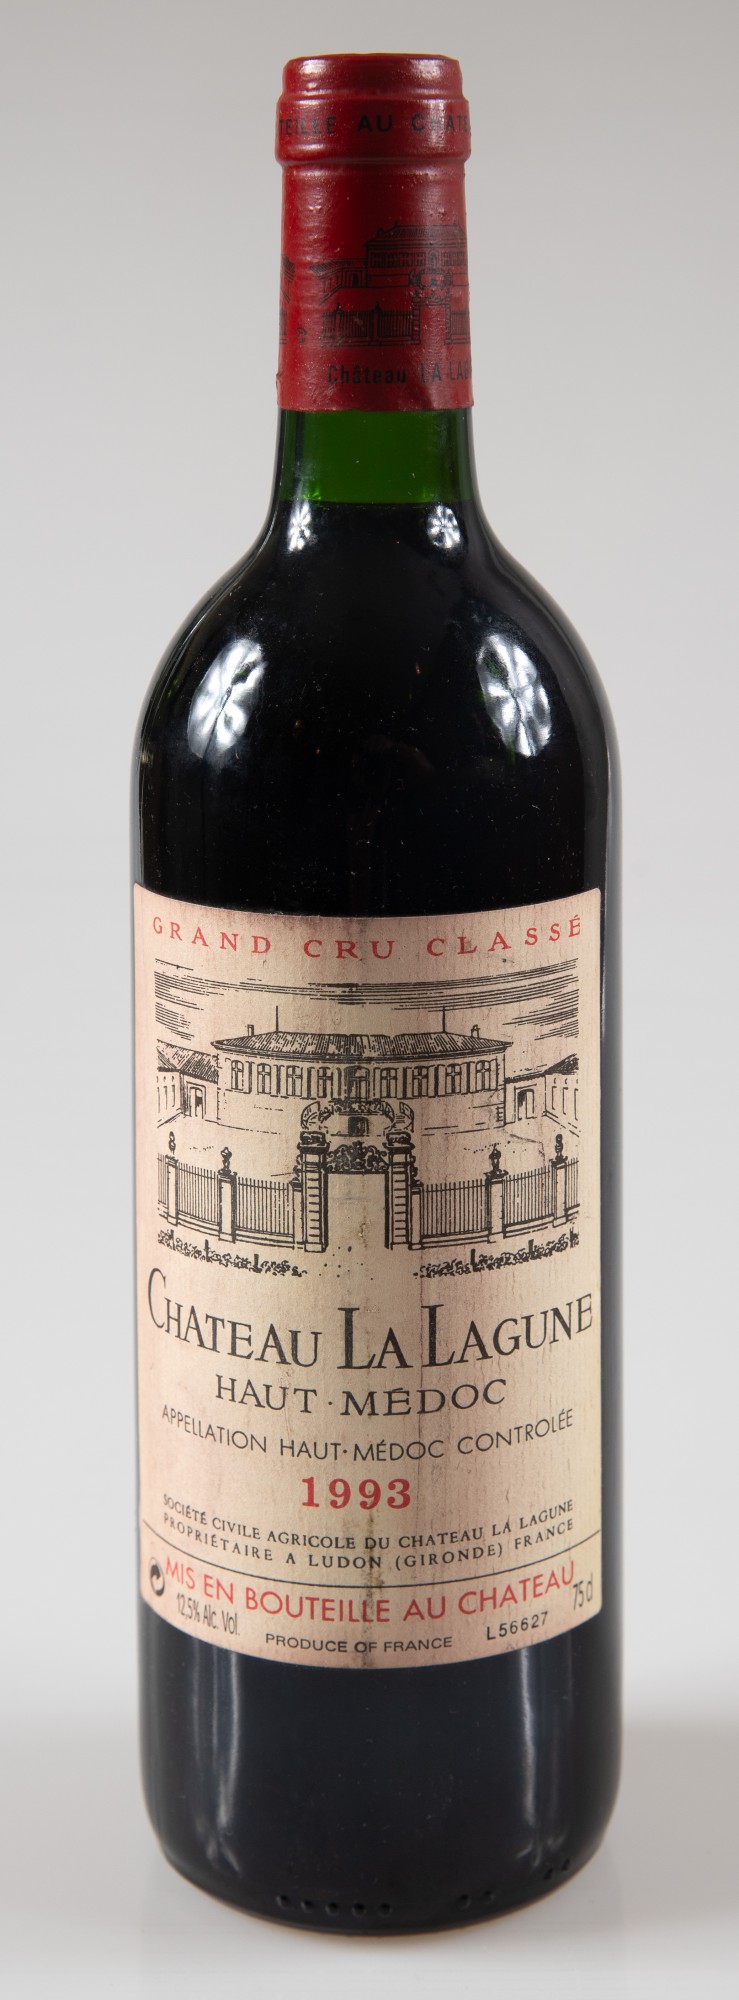 Vinho - Château La Lagune, Haut-Médoc Grand Cru Classé, Bordeaux - Vinho Tinto